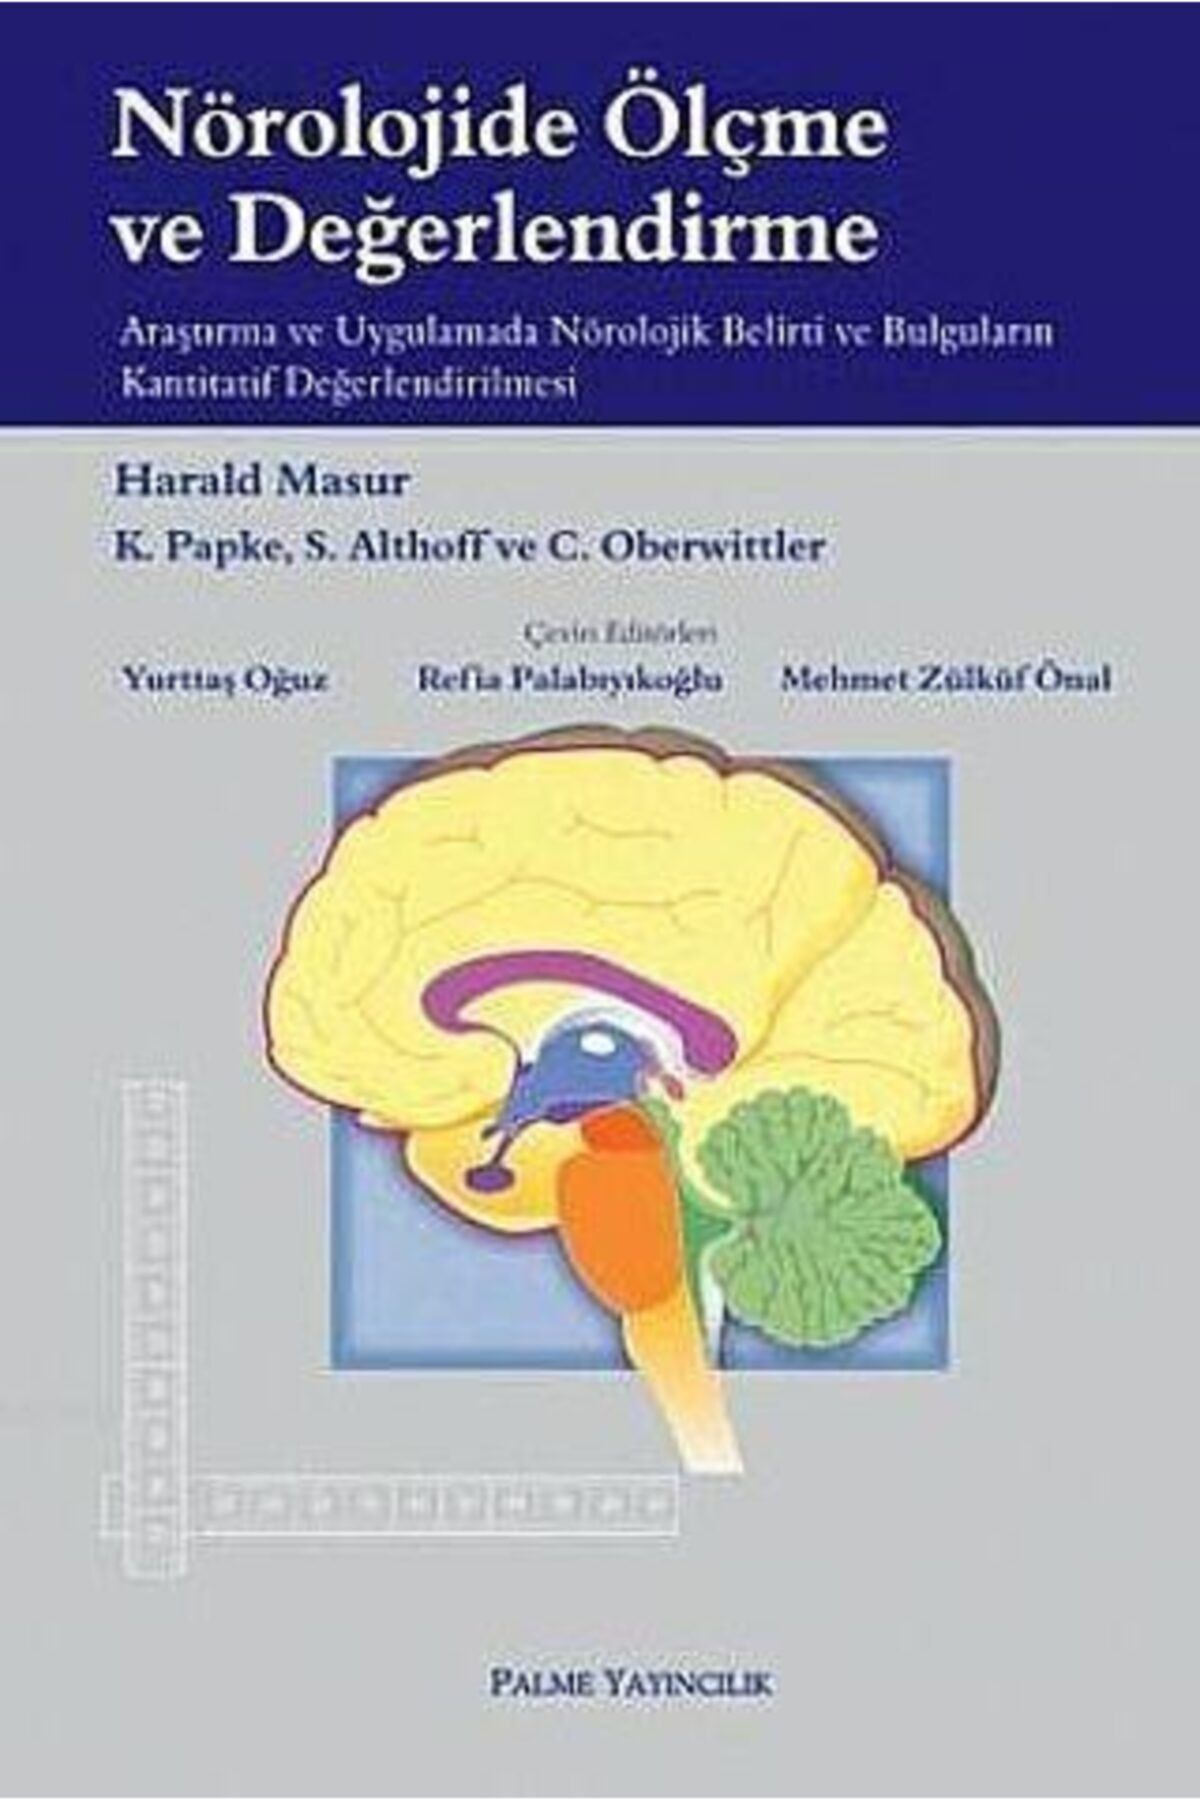 Palme Yayınevi Nörolojide Ölçme Ve Değerlendirme Kitabı - Harald Masur